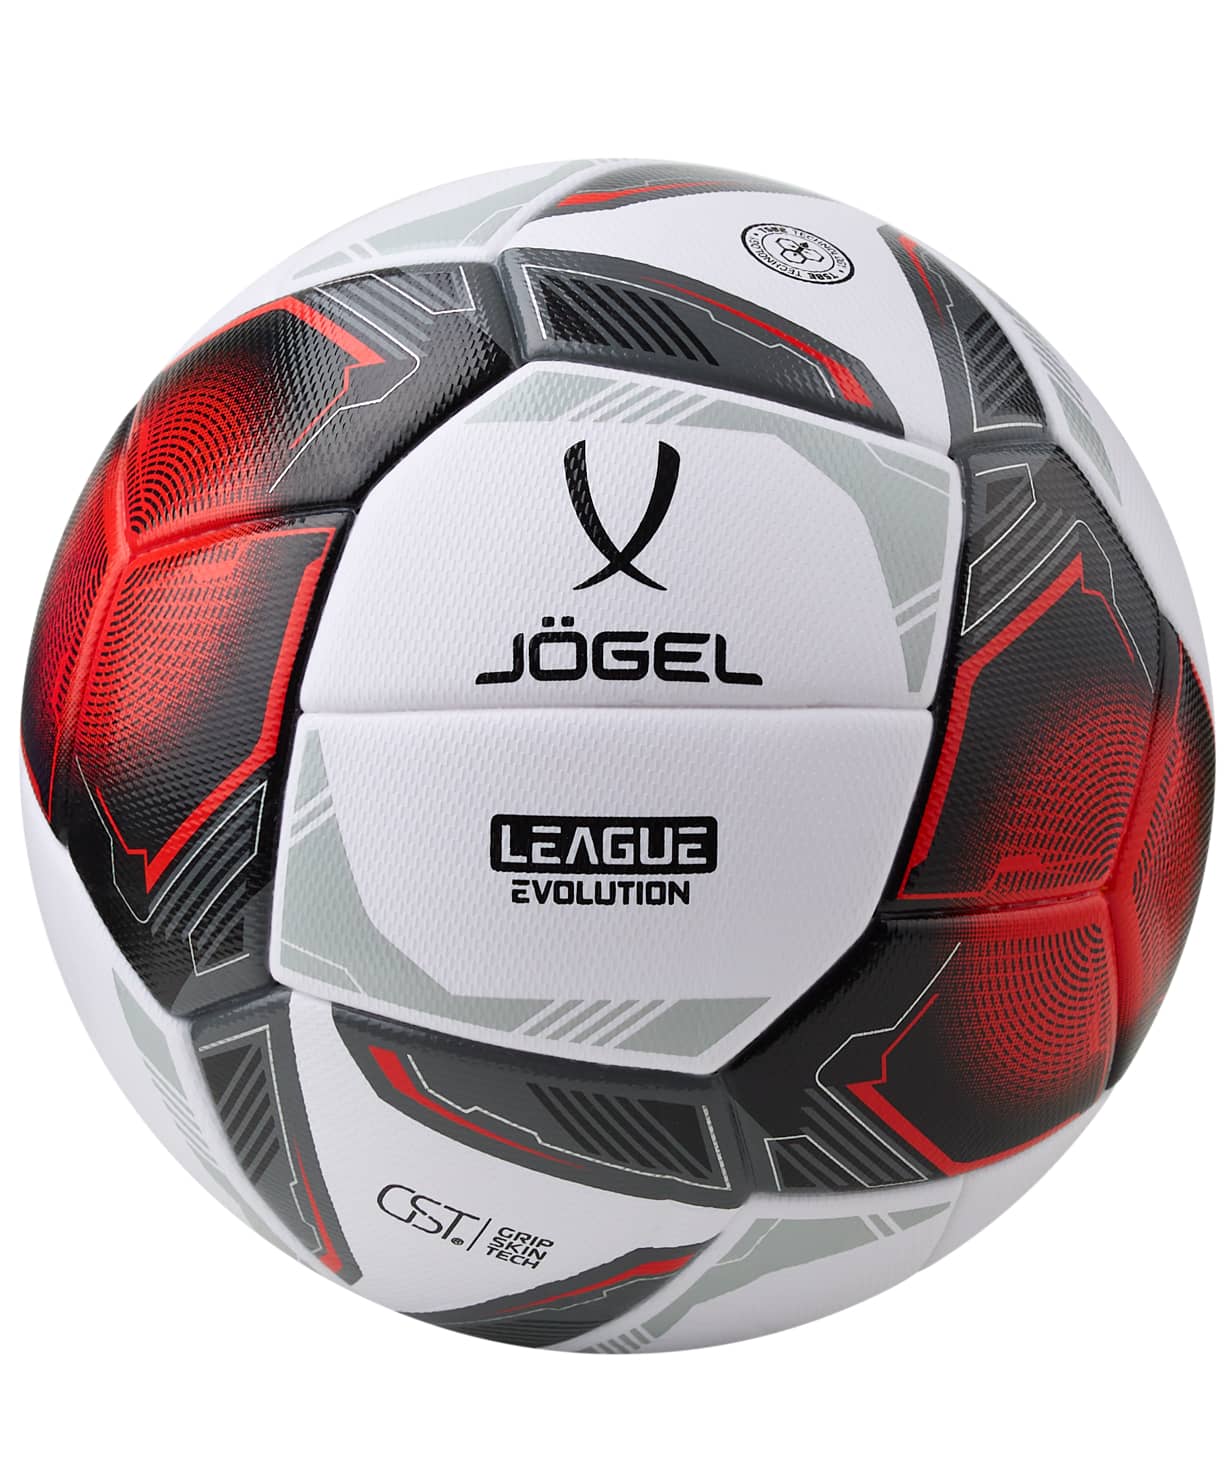   Jogel League Evolution Pro,  5, 